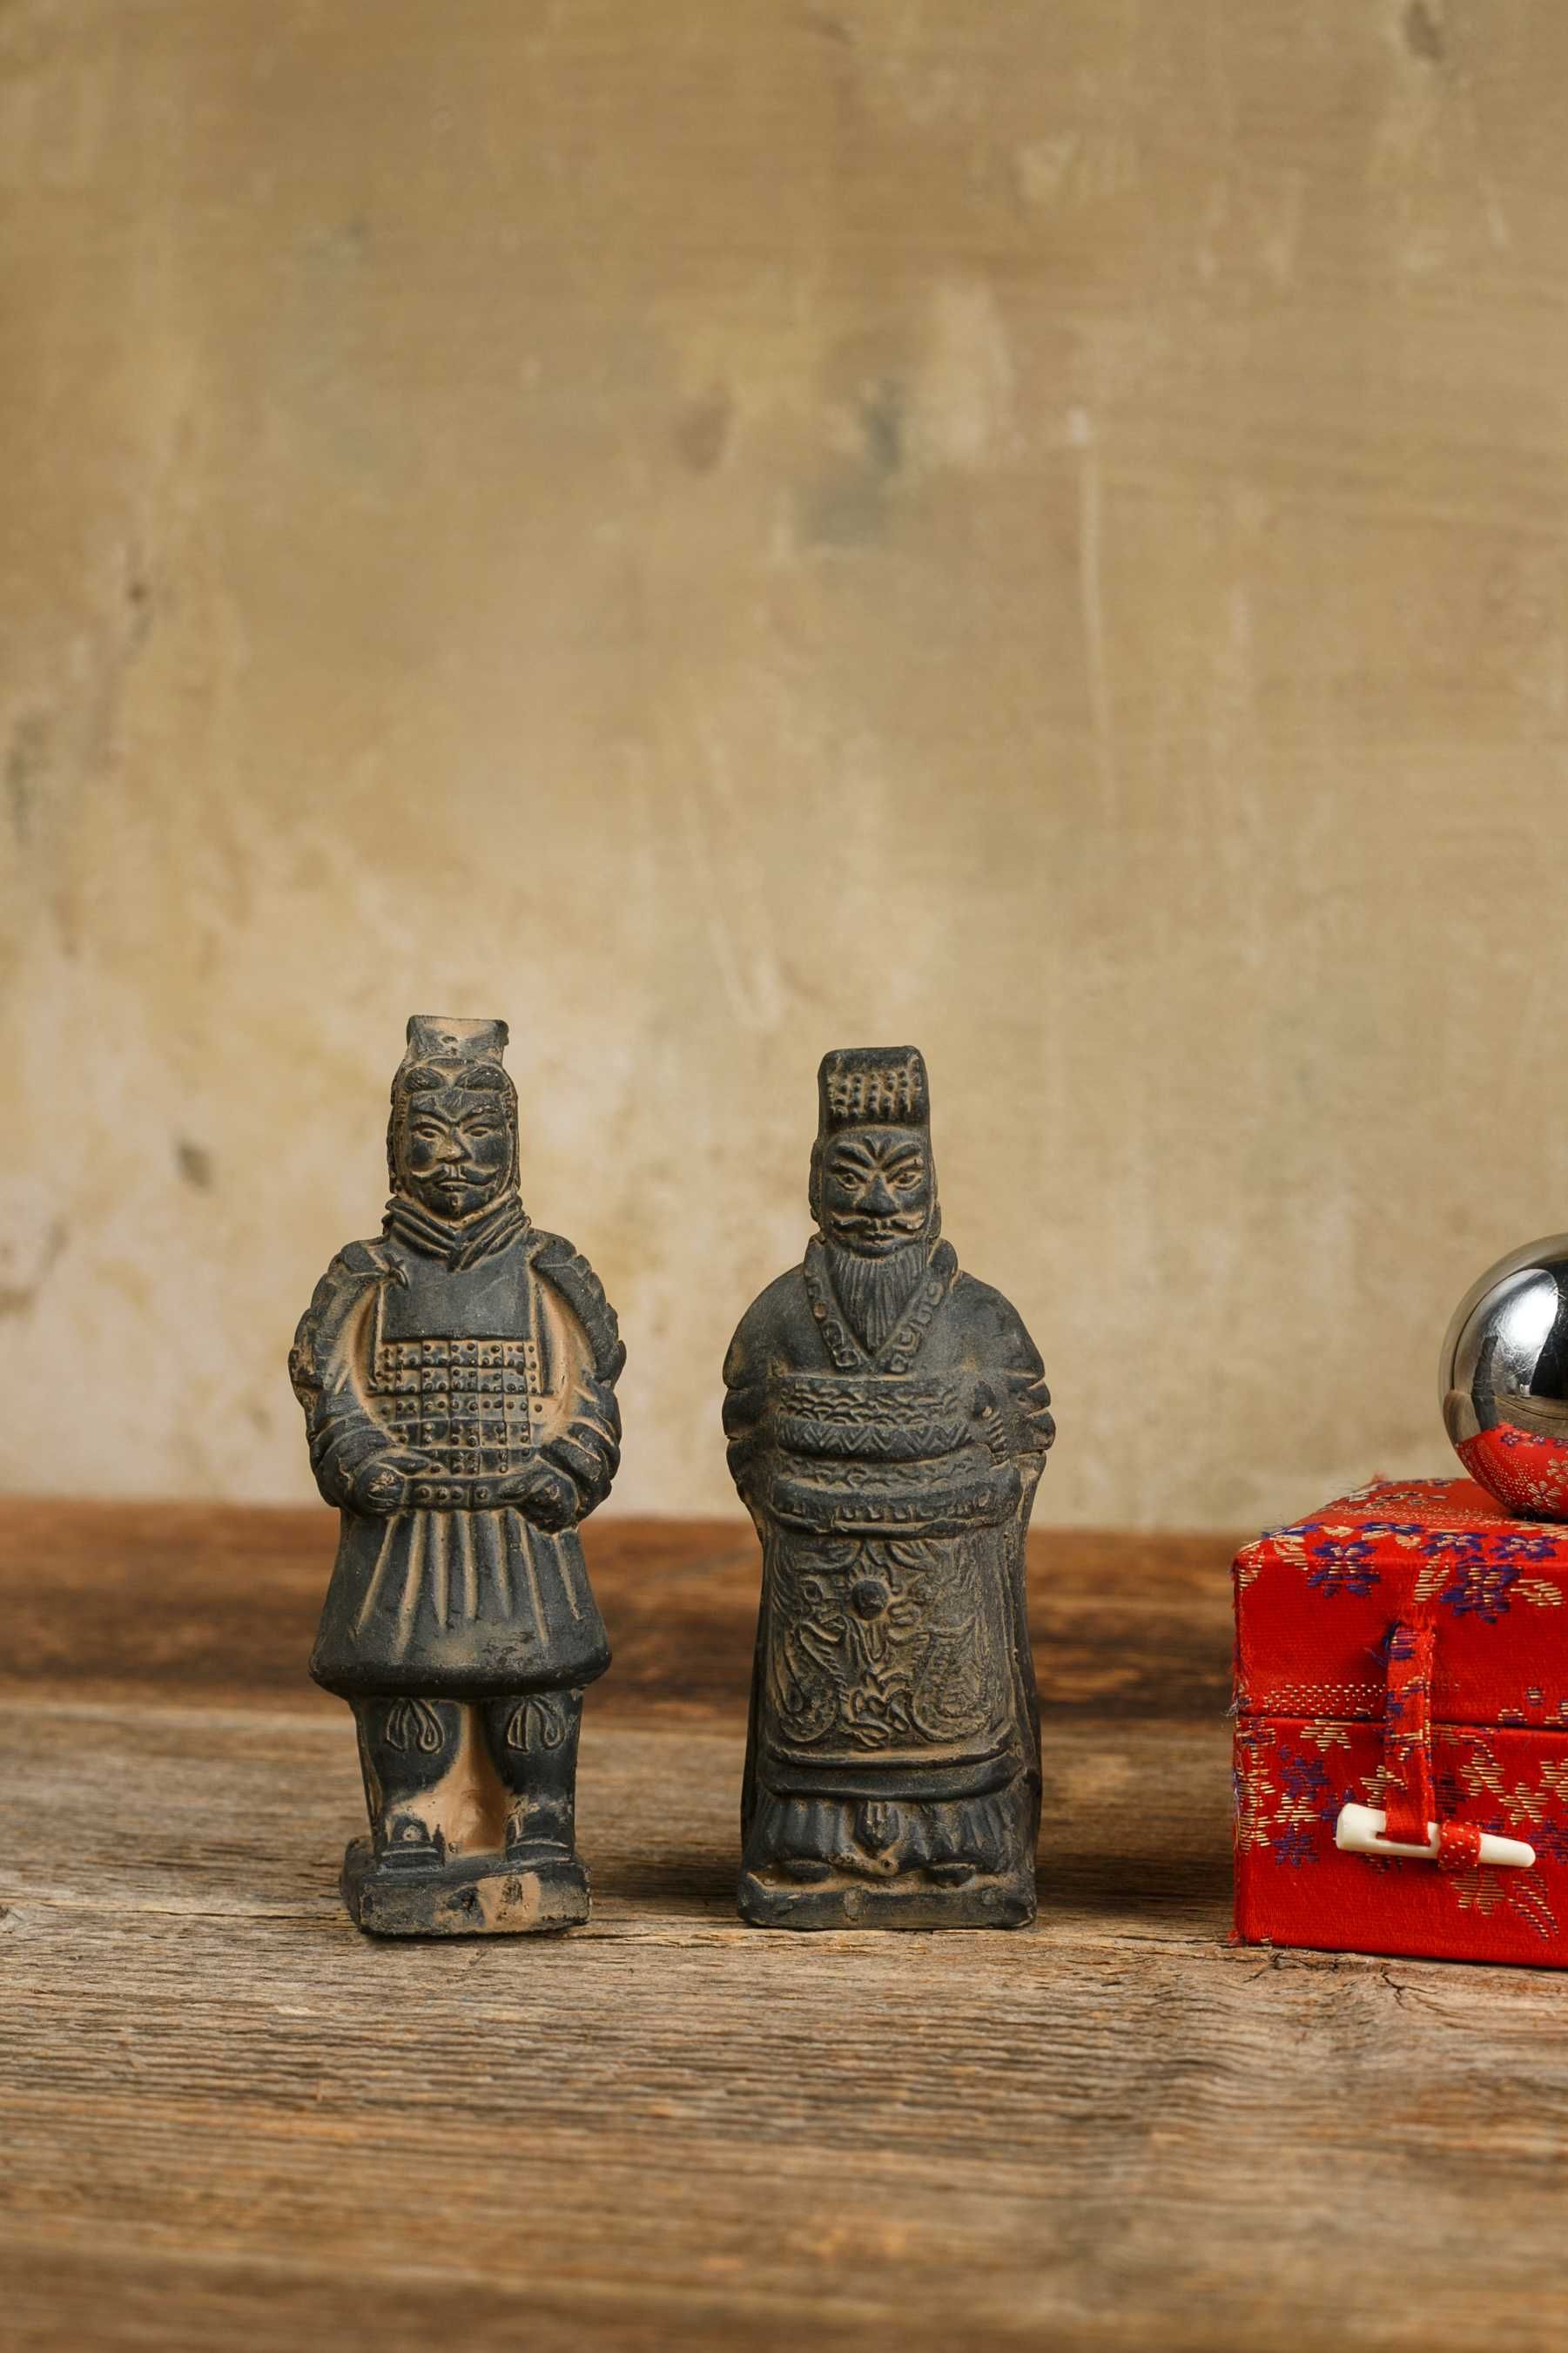 terakotowe figurki chińskich wojowników